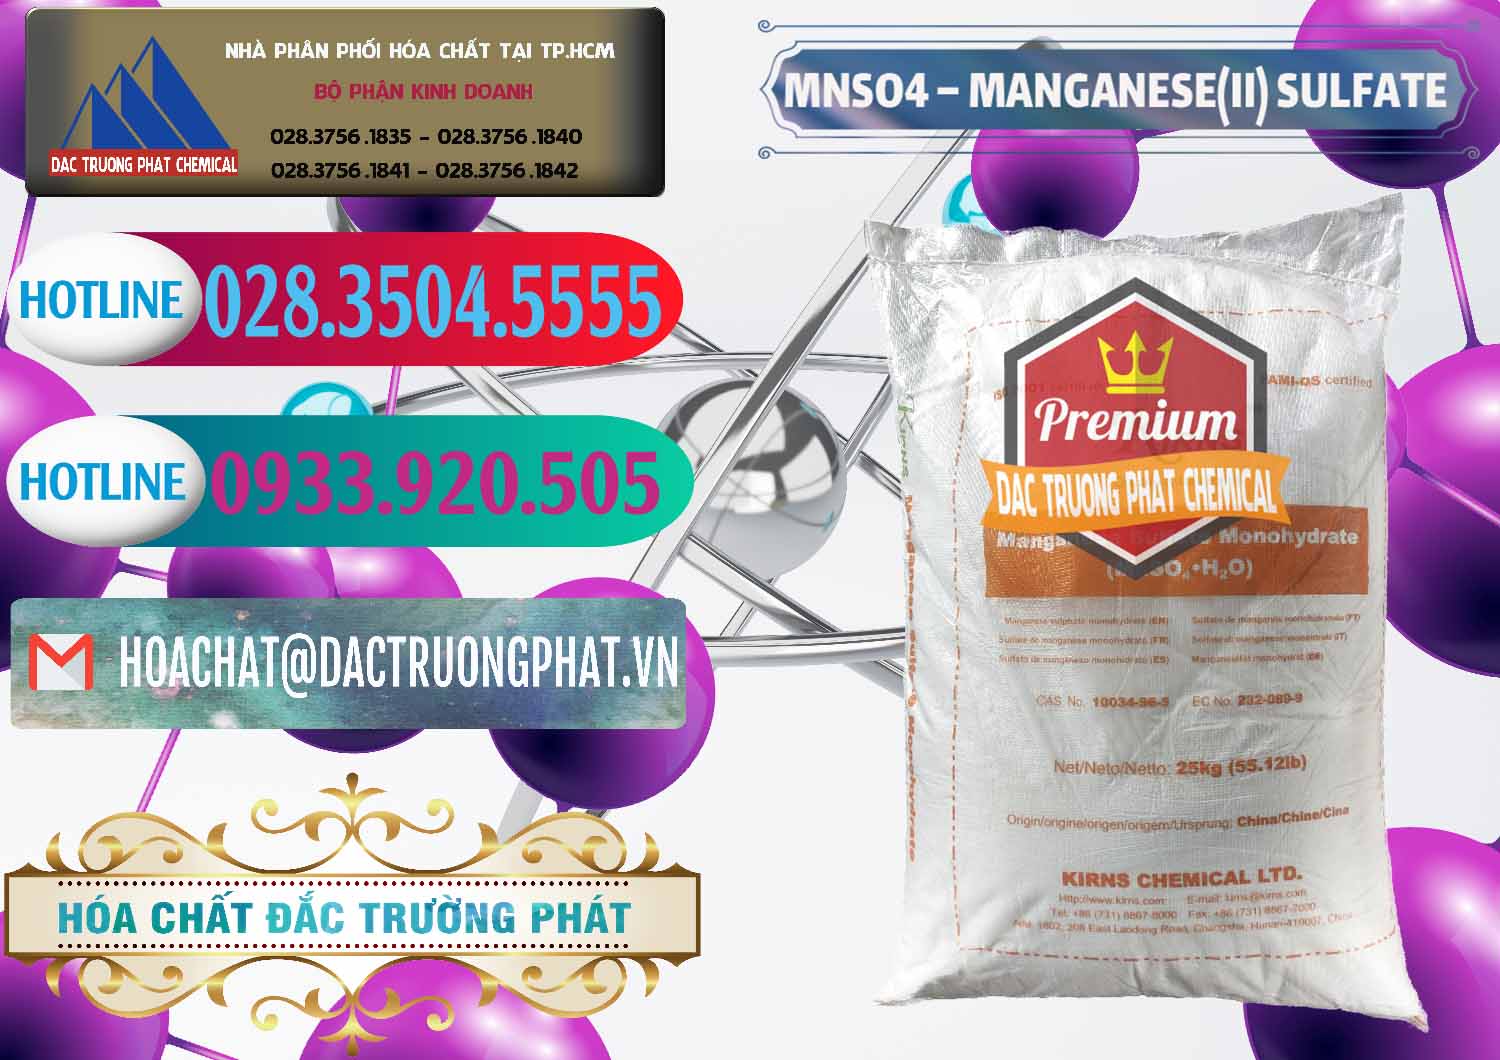 Cty cung ứng & bán MNSO4 – Manganese (II) Sulfate Kirns Trung Quốc China - 0095 - Nơi chuyên kinh doanh và phân phối hóa chất tại TP.HCM - truongphat.vn